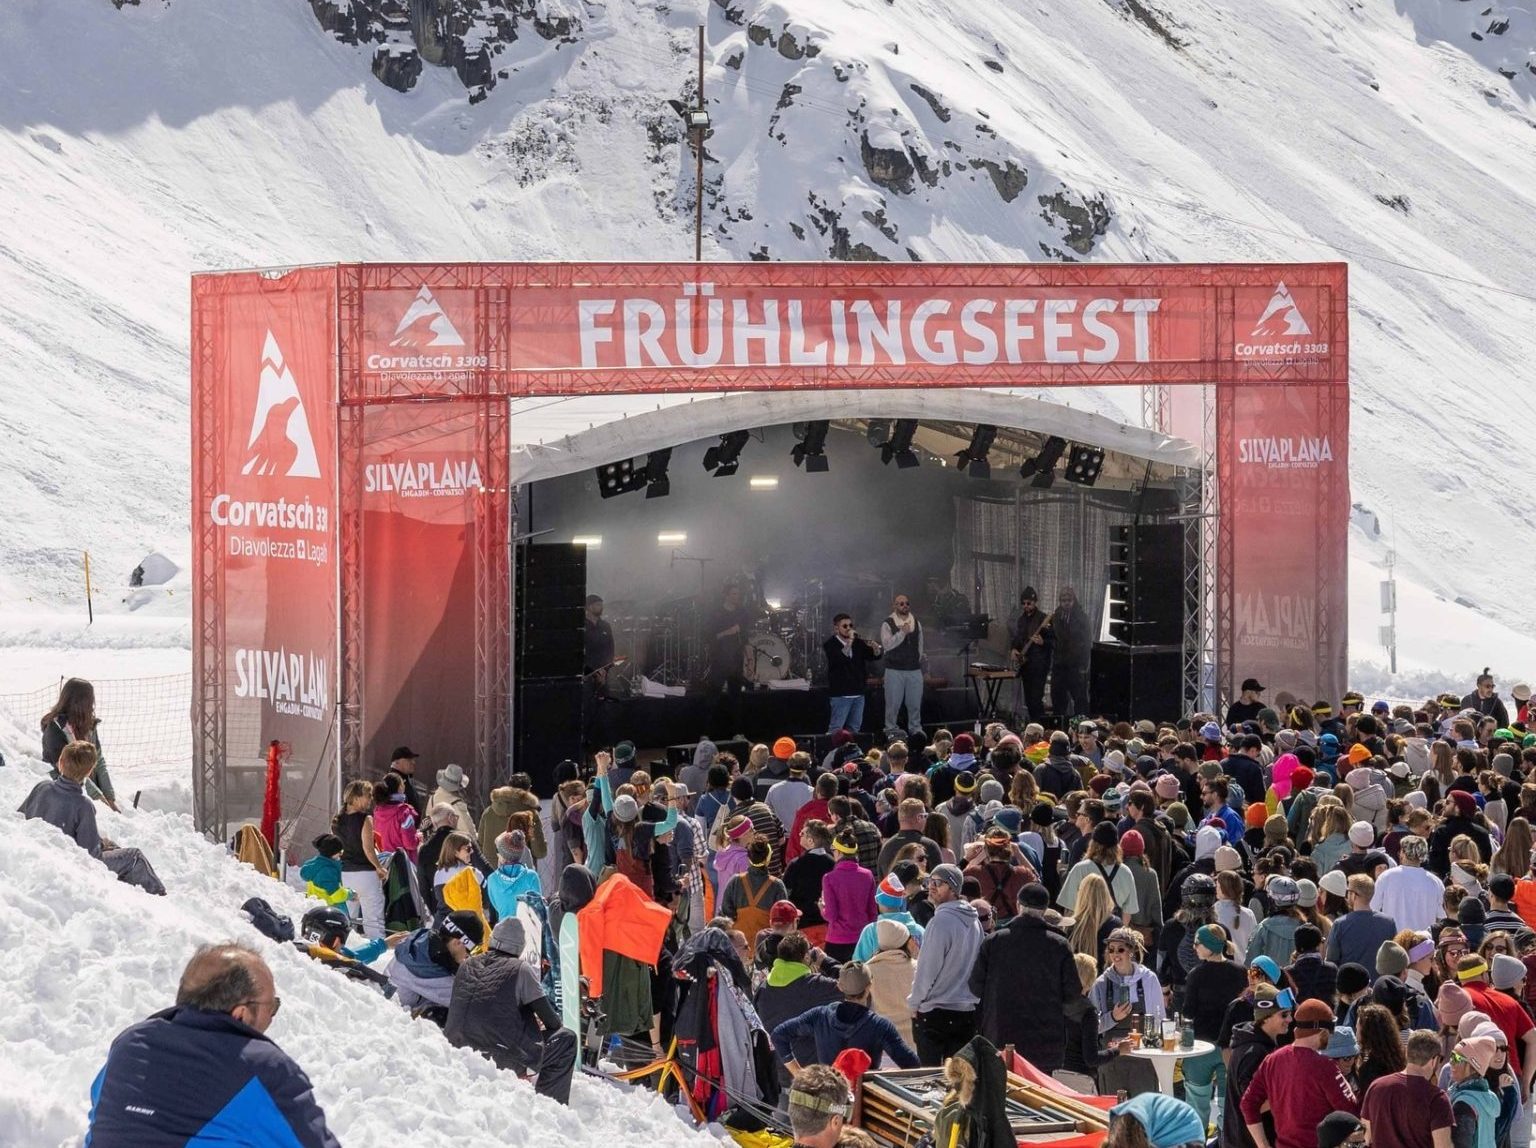 Das Skigebiet Corvach in der Nähe von St. Moritz in der Schweiz feiert die Saison 23/24 mit seinem sechsten jährlichen Frühlingsfest